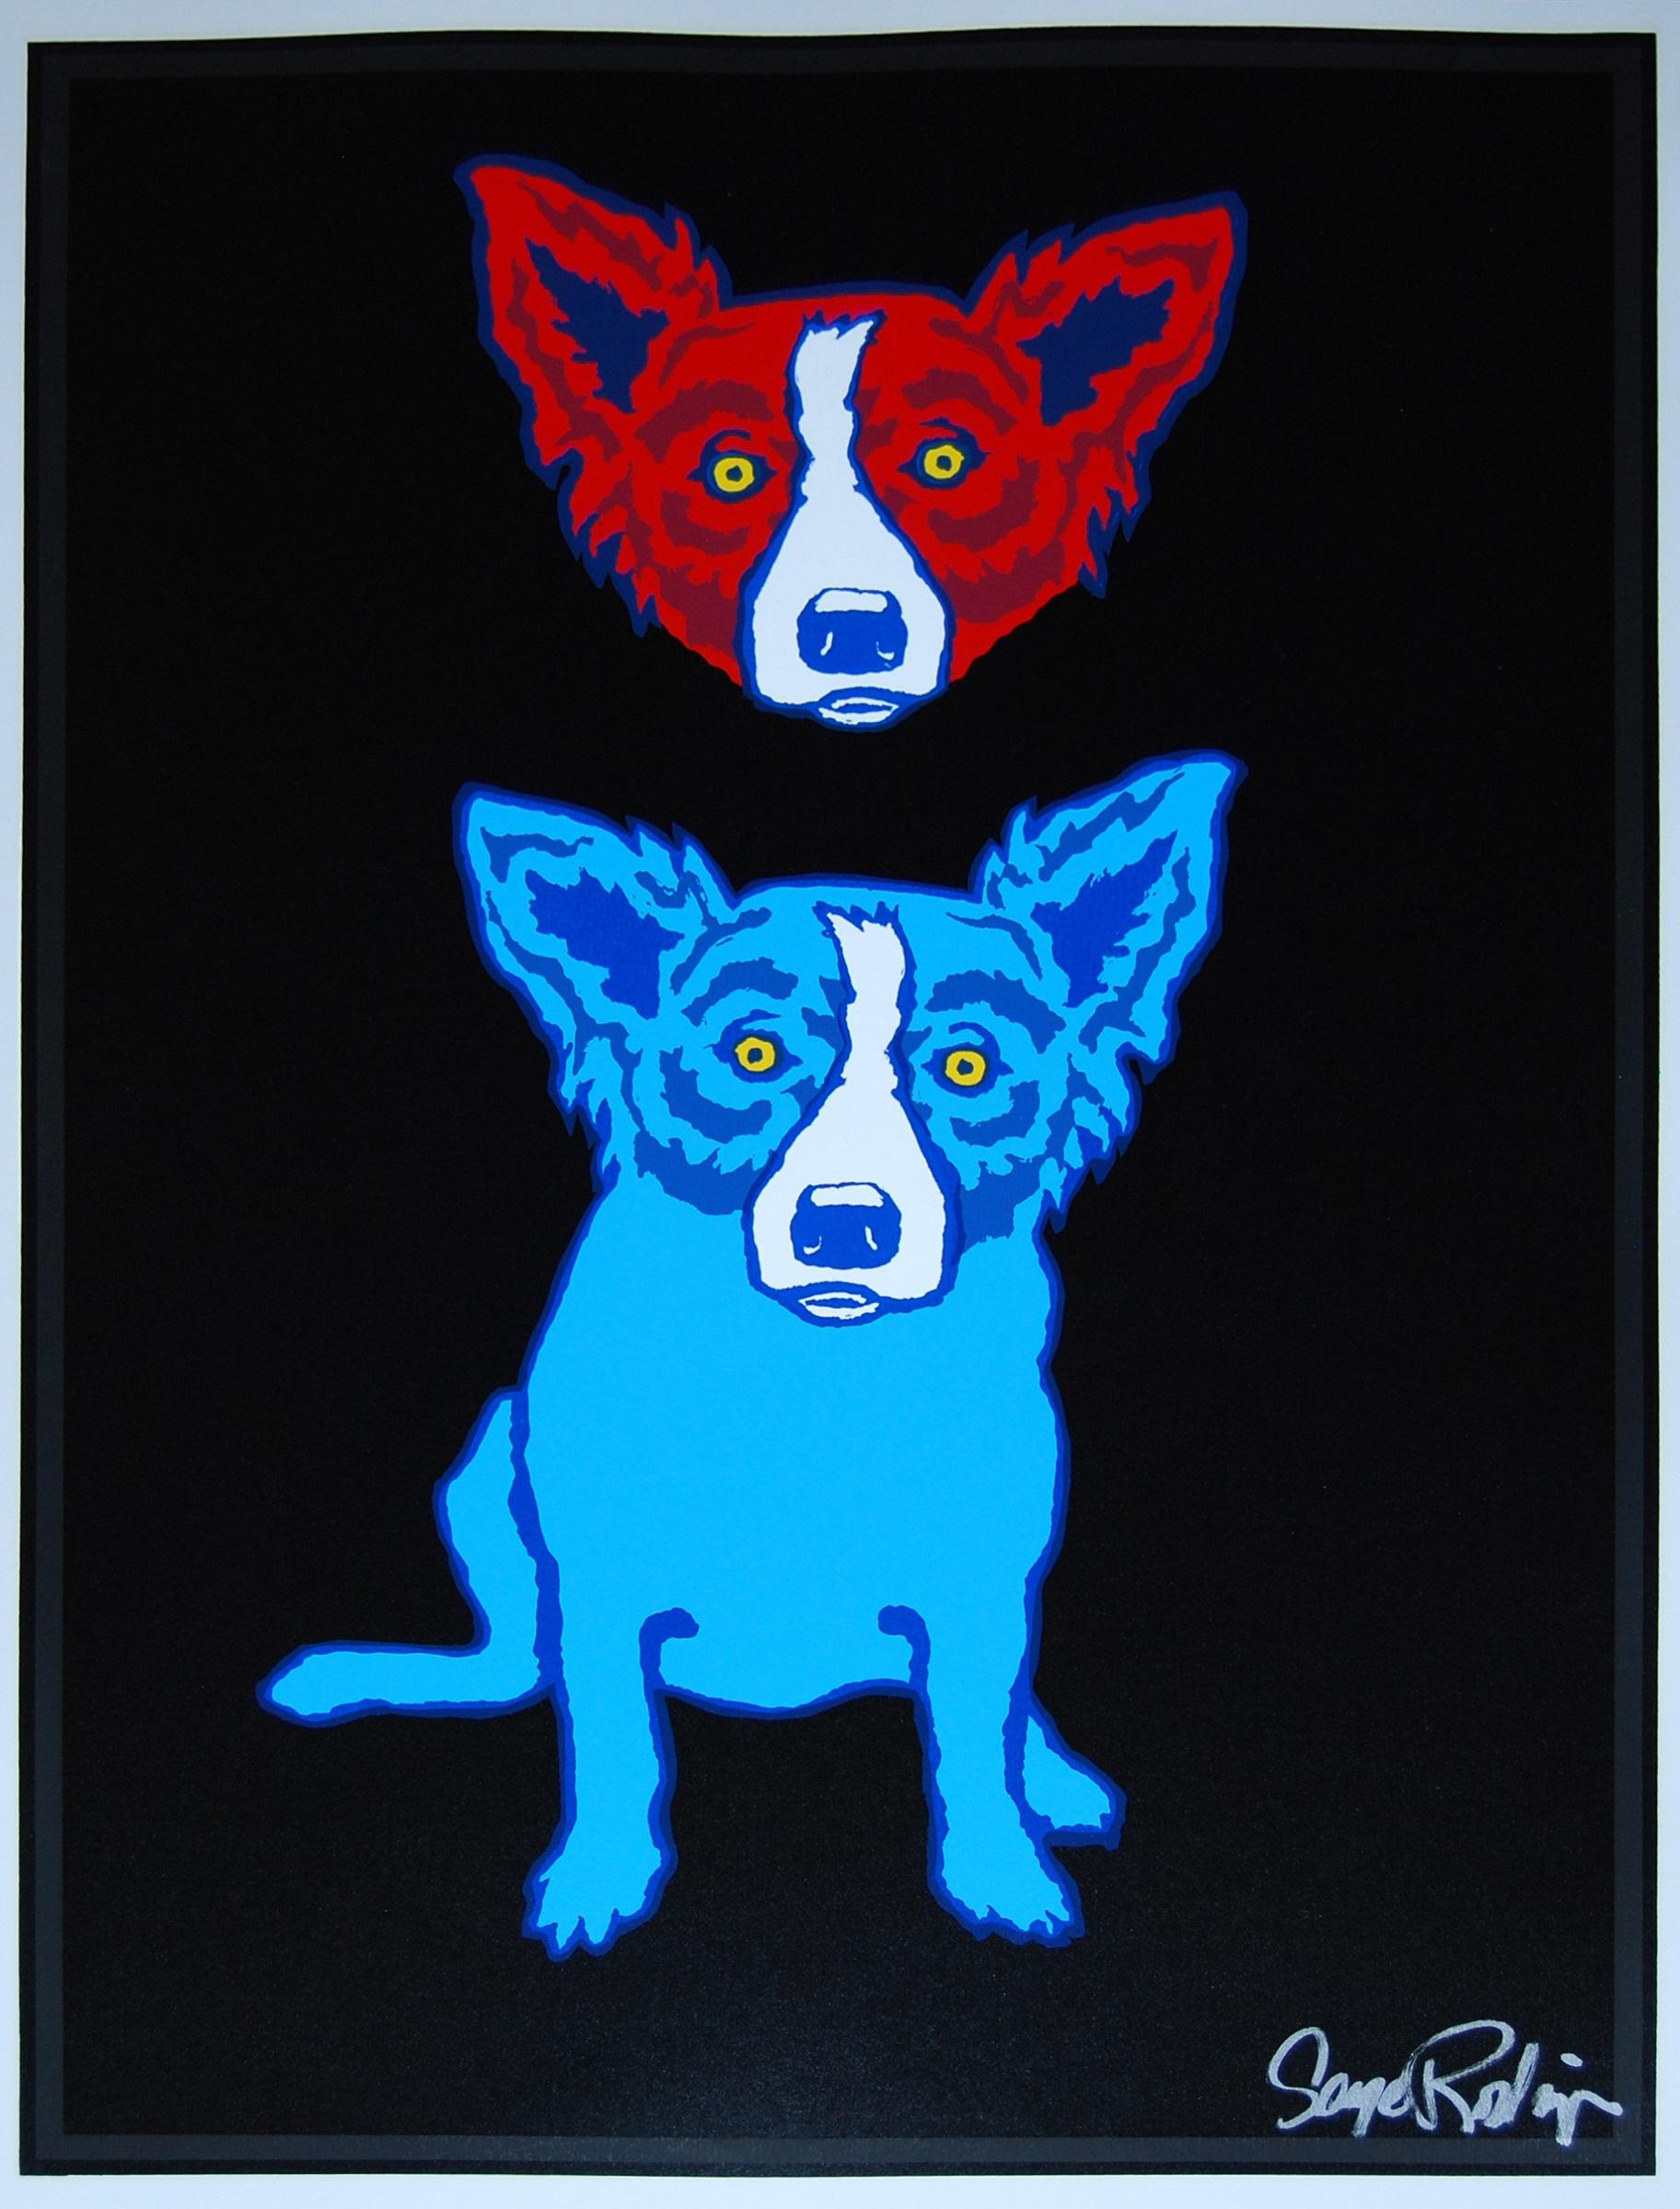 George Rodrigue Animal Print – Mischief On My Mind - Siebdruck mit blauem Hund mit signiertem Druck